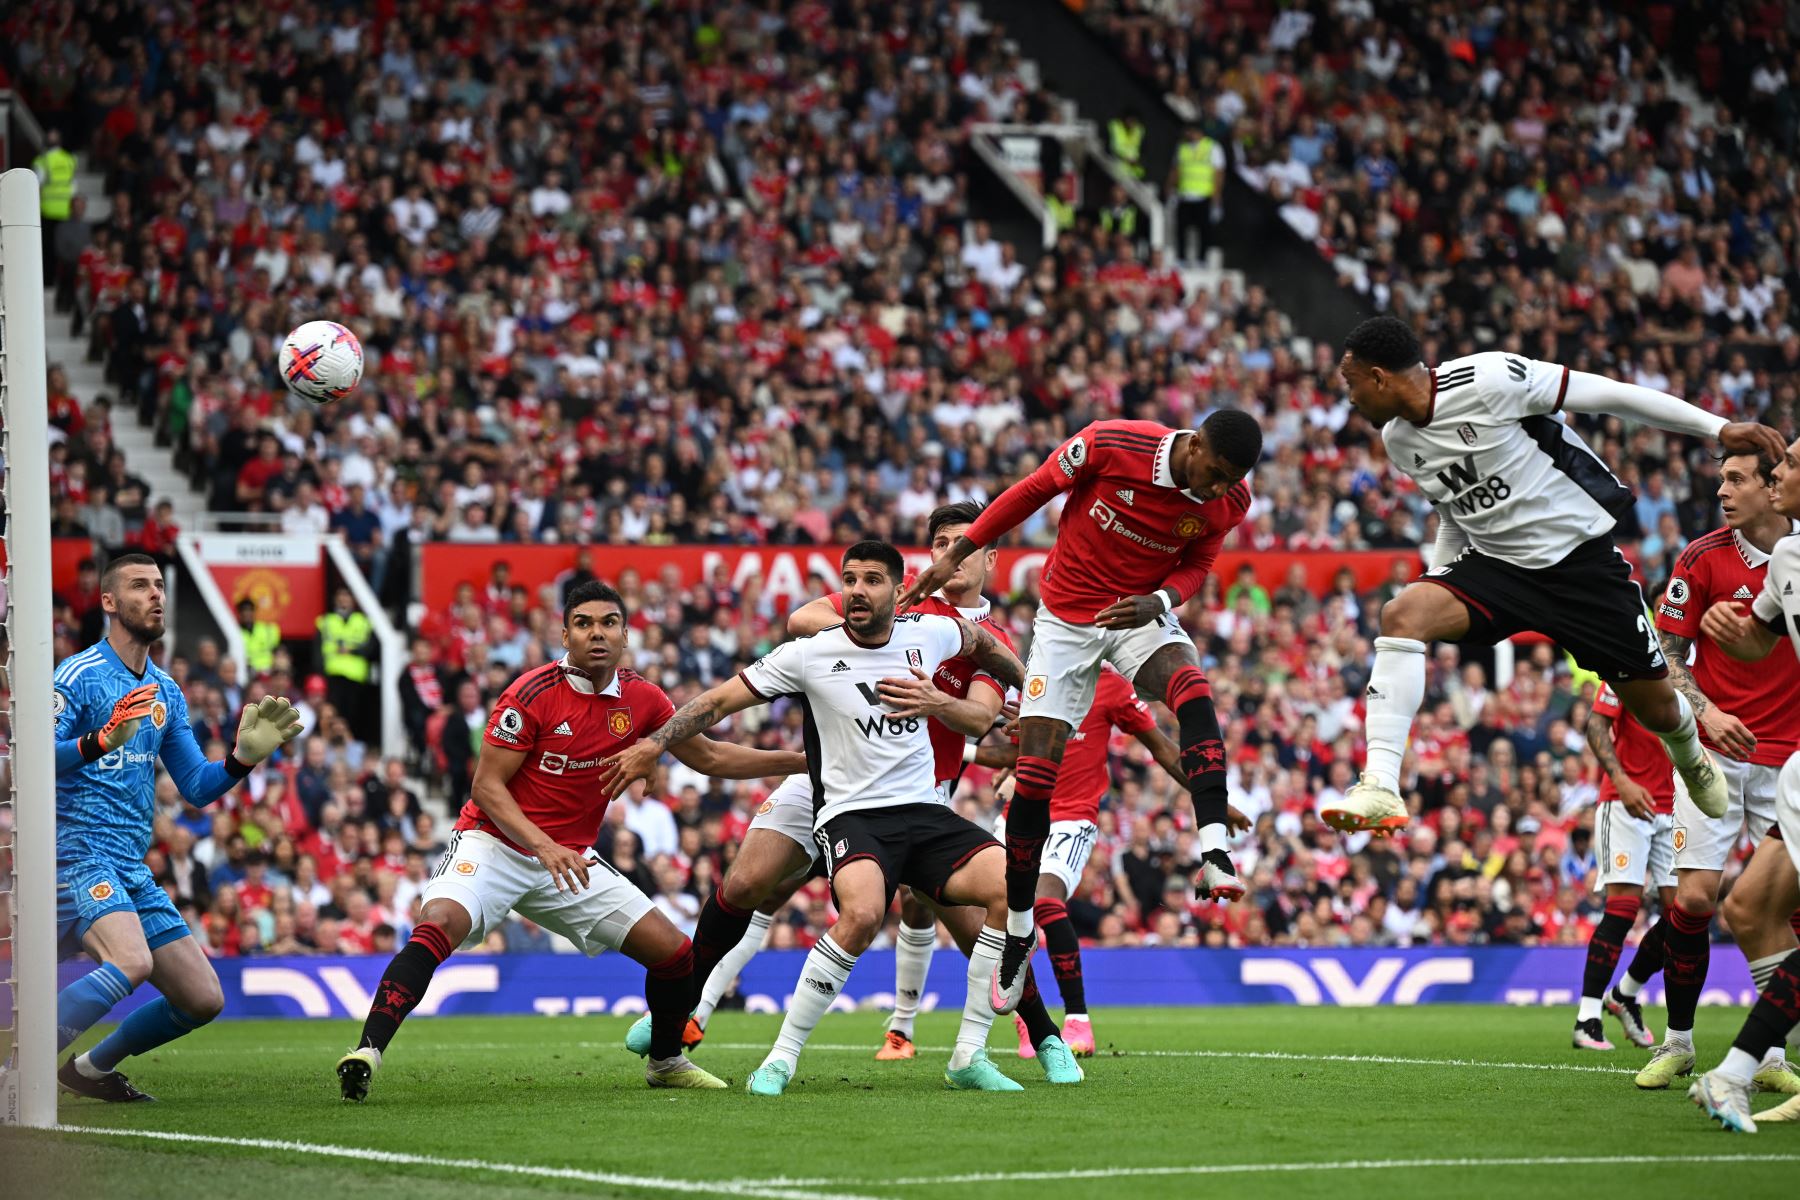 El defensor holandés del Fulham, Kenny Tete, encabeza el gol de apertura durante el partido de fútbol de la Premier League inglesa entre el Manchester United y el Fulham. Foto: AFP